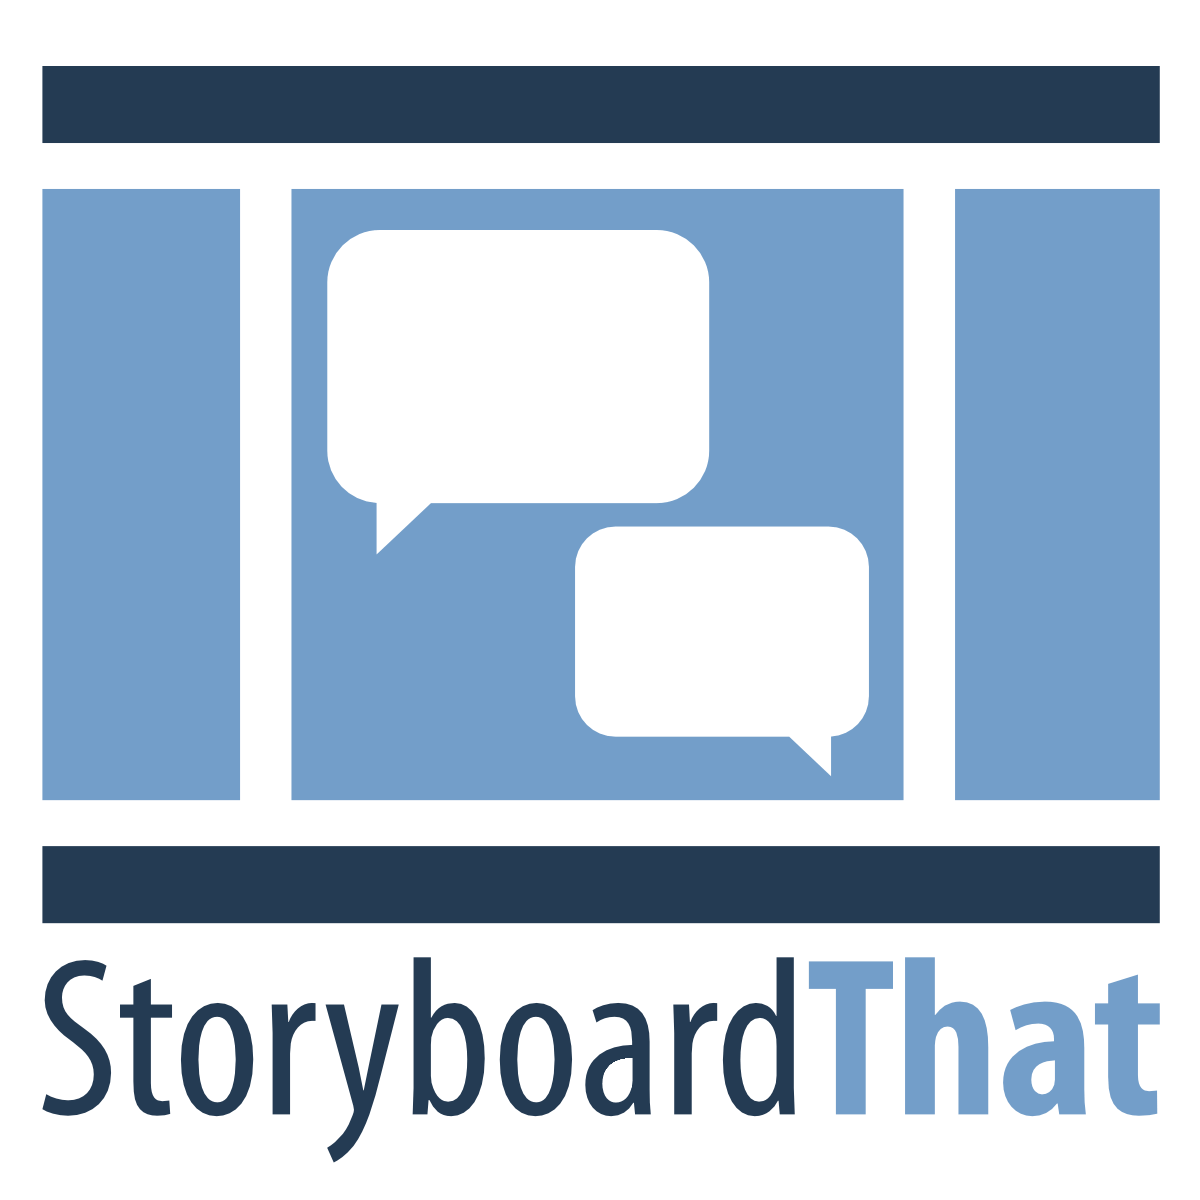 StoryBoardThat